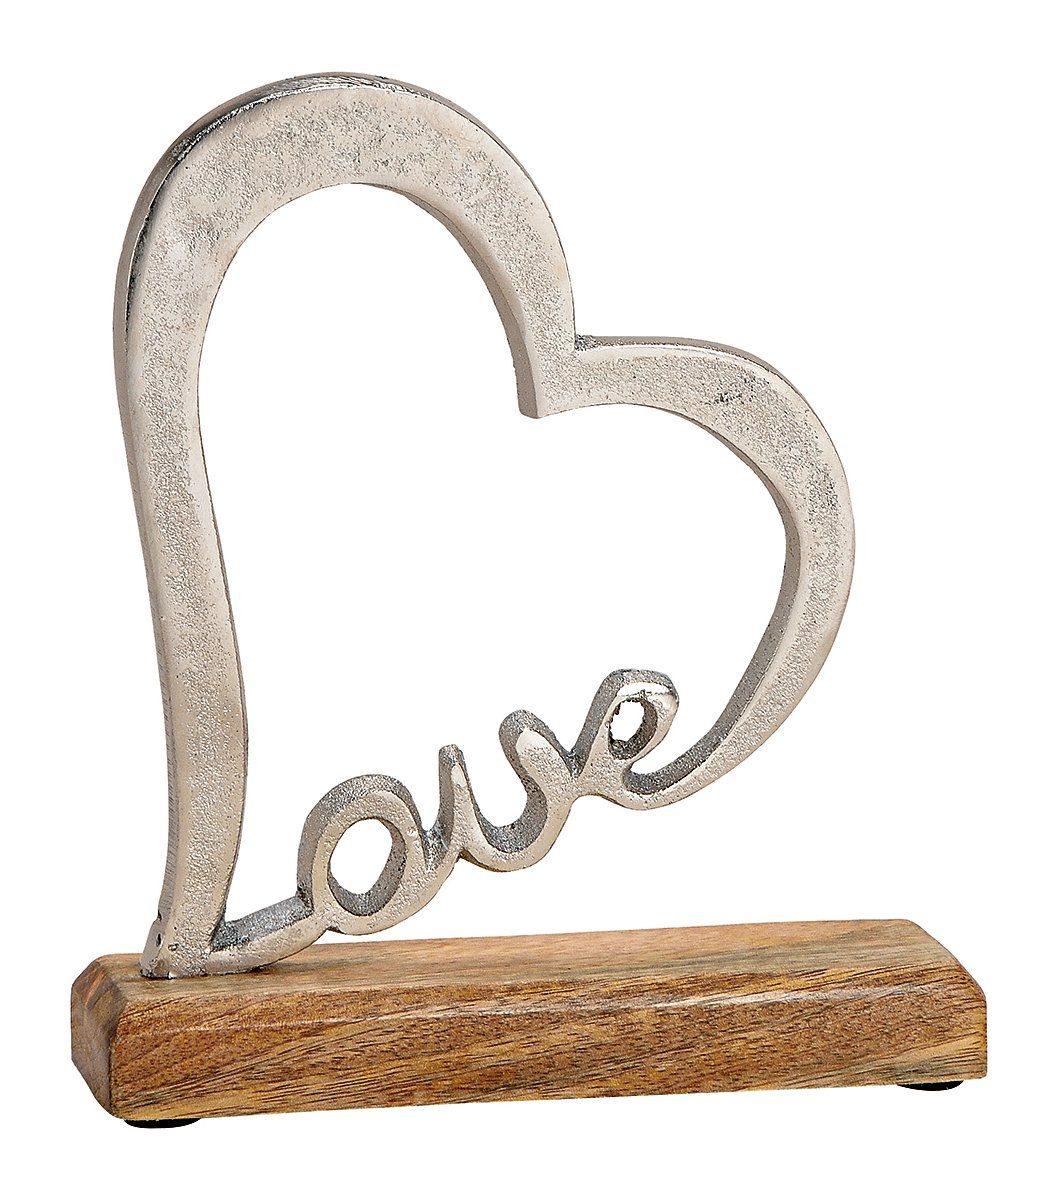 NO NAME Dekofigur Herzfigur mit Love-Schriftzug aus Alu + Holz, Skulptur, Sammlerfigur, Herzfigur